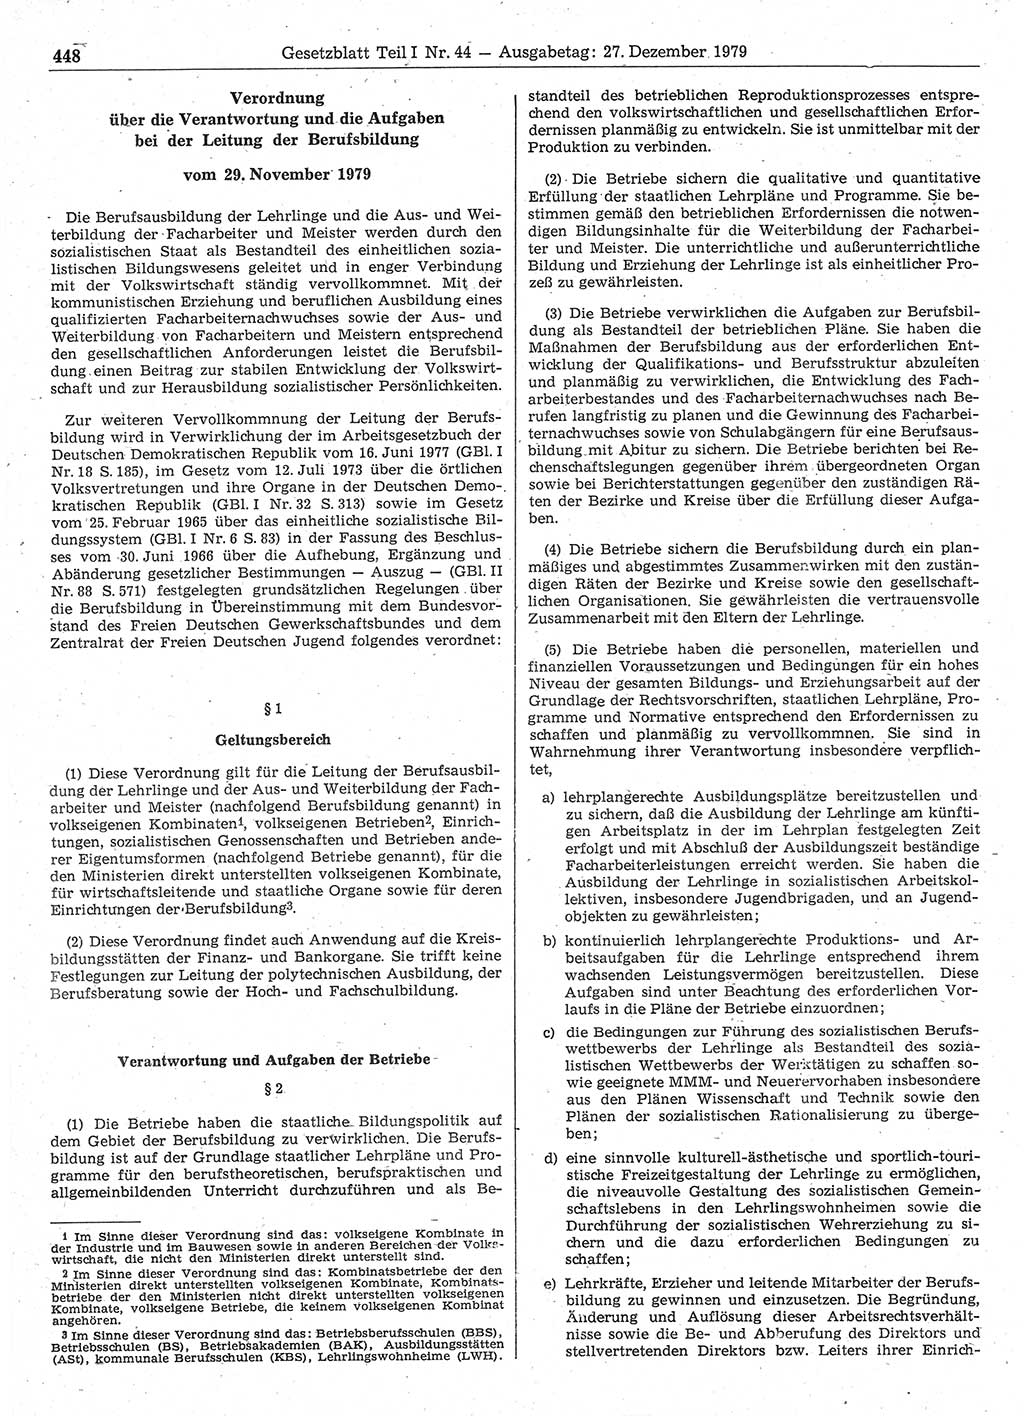 Gesetzblatt (GBl.) der Deutschen Demokratischen Republik (DDR) Teil Ⅰ 1979, Seite 448 (GBl. DDR Ⅰ 1979, S. 448)